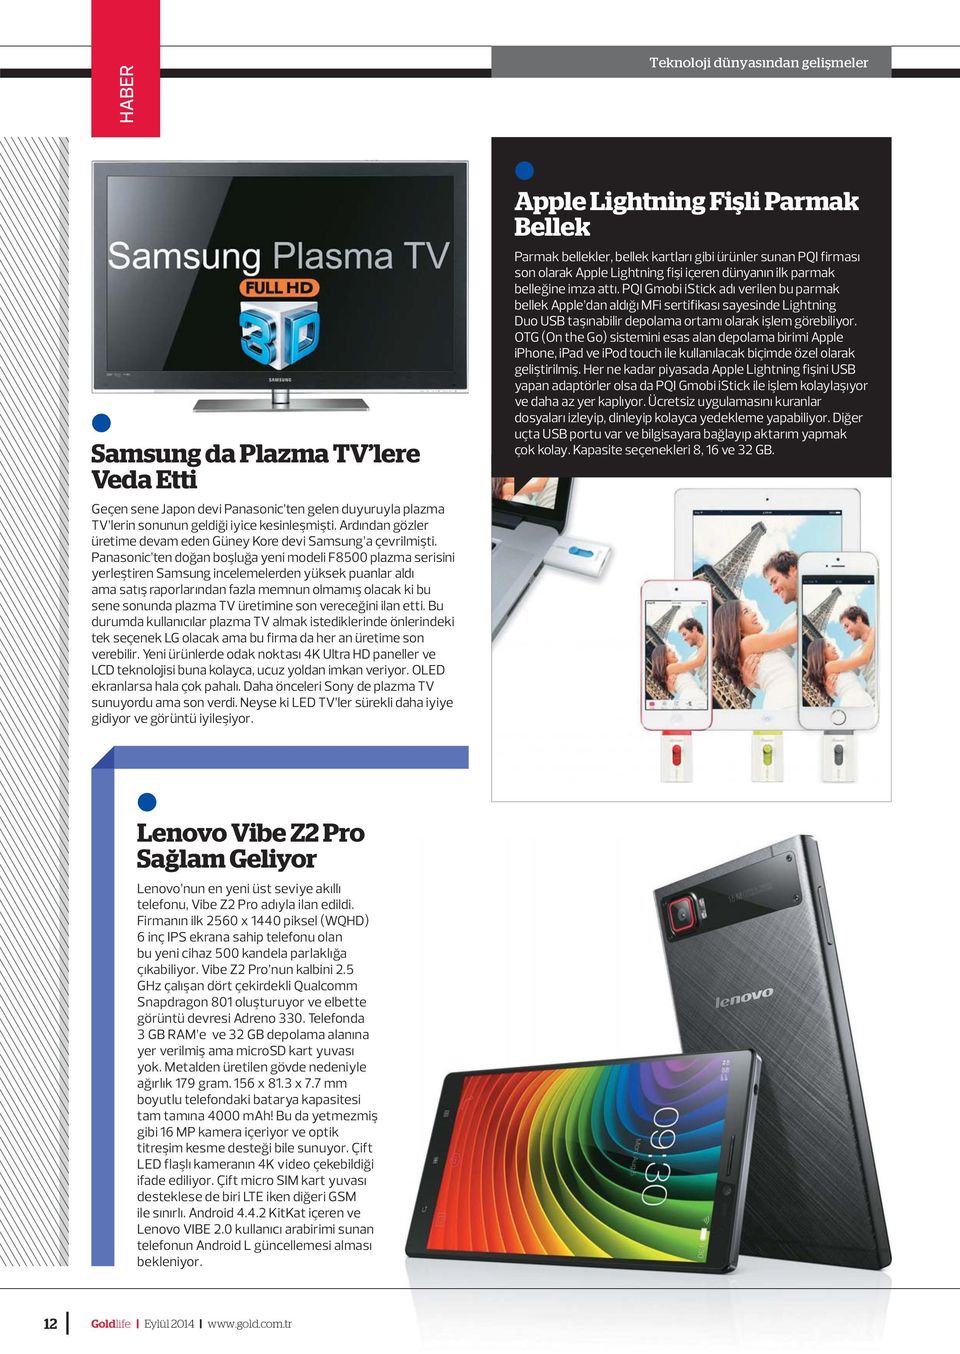 Panasonic ten doğan boşluğa yeni modeli F8500 plazma serisini yerleştiren Samsung incelemelerden yüksek puanlar aldı ama satış raporlarından fazla memnun olmamış olacak ki bu sene sonunda plazma TV